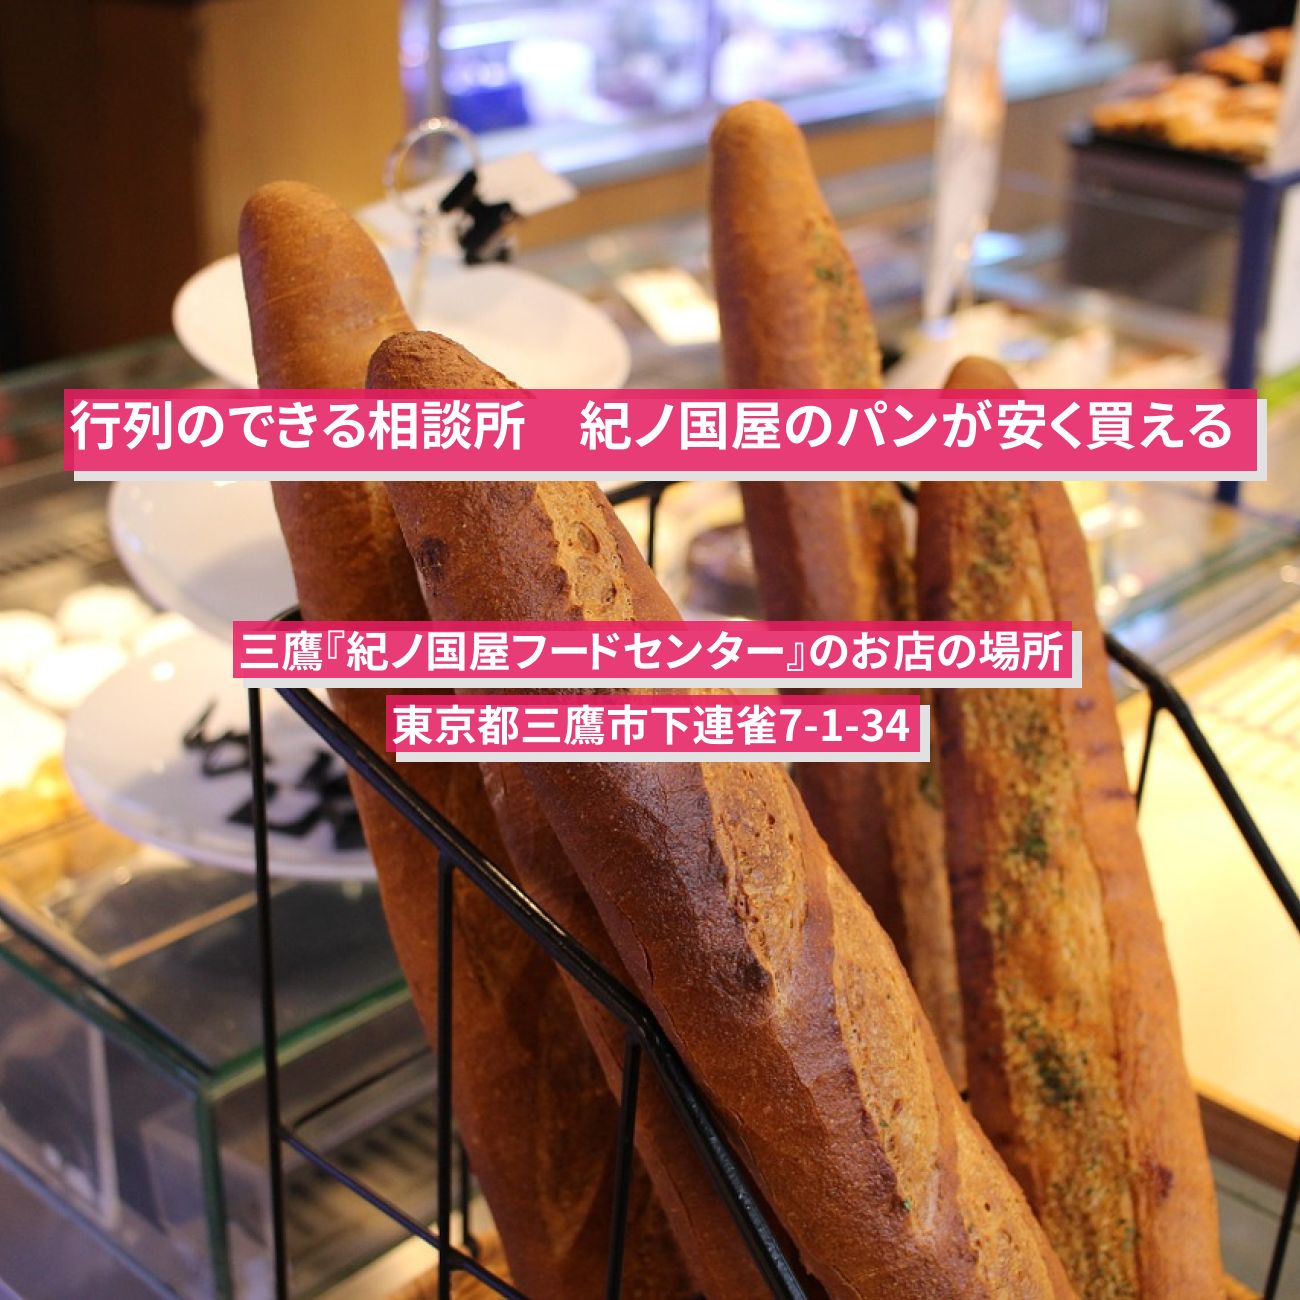 【行列のできる相談所】紀ノ国屋のパンが安く買える『紀ノ国屋フードセンター』三鷹のお店の場所